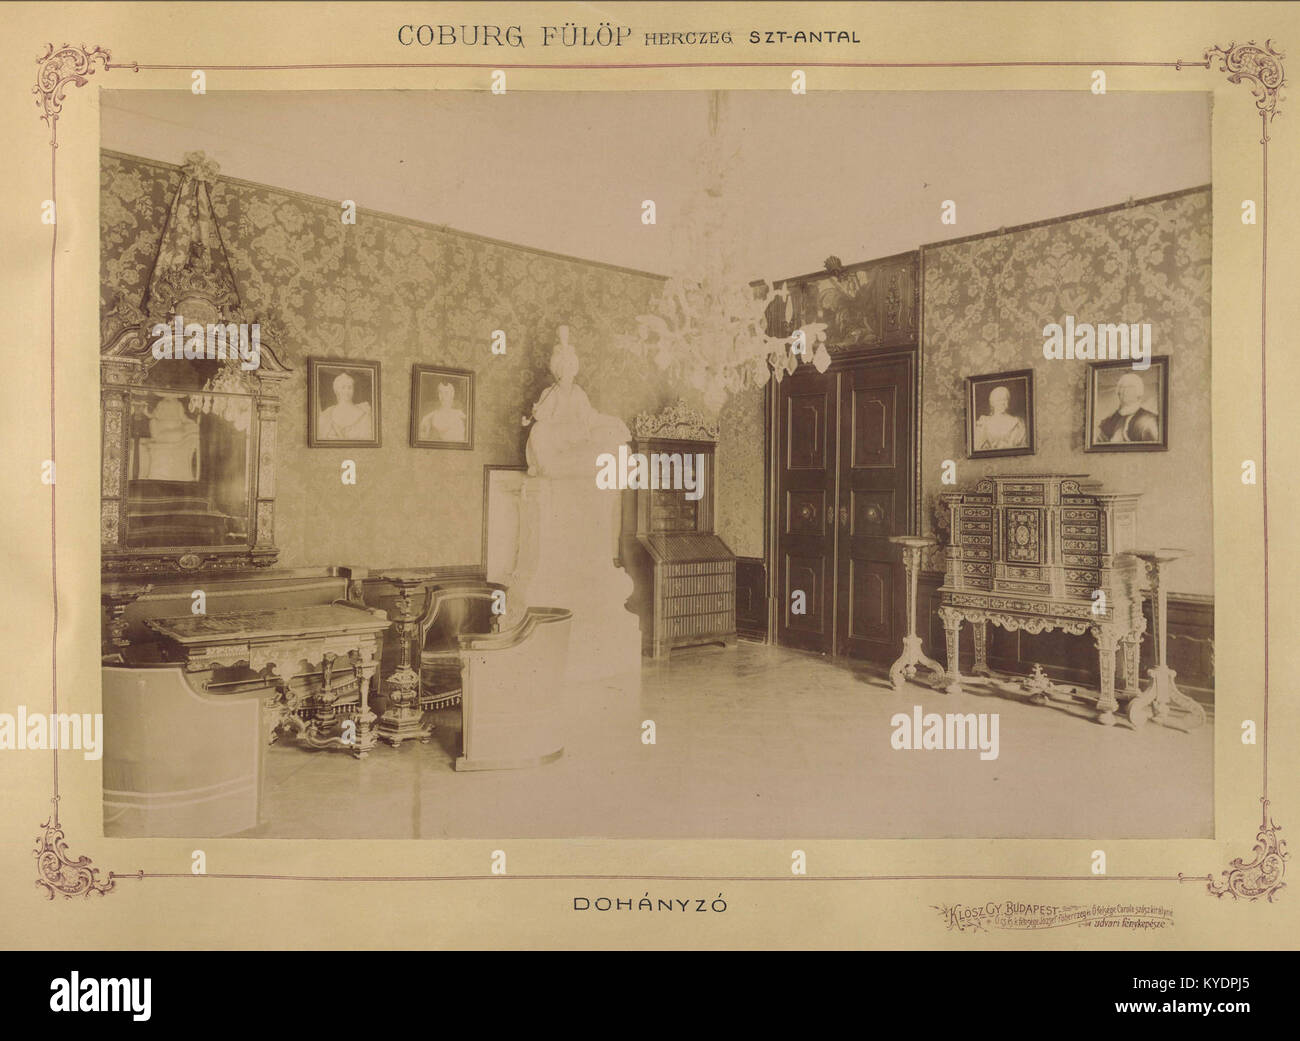 Szlovákia, Szentantal. Coburg Fülöp herceg kastélya, dohányzó. 1895-1899 között. 83370 Fortepan Stockfoto